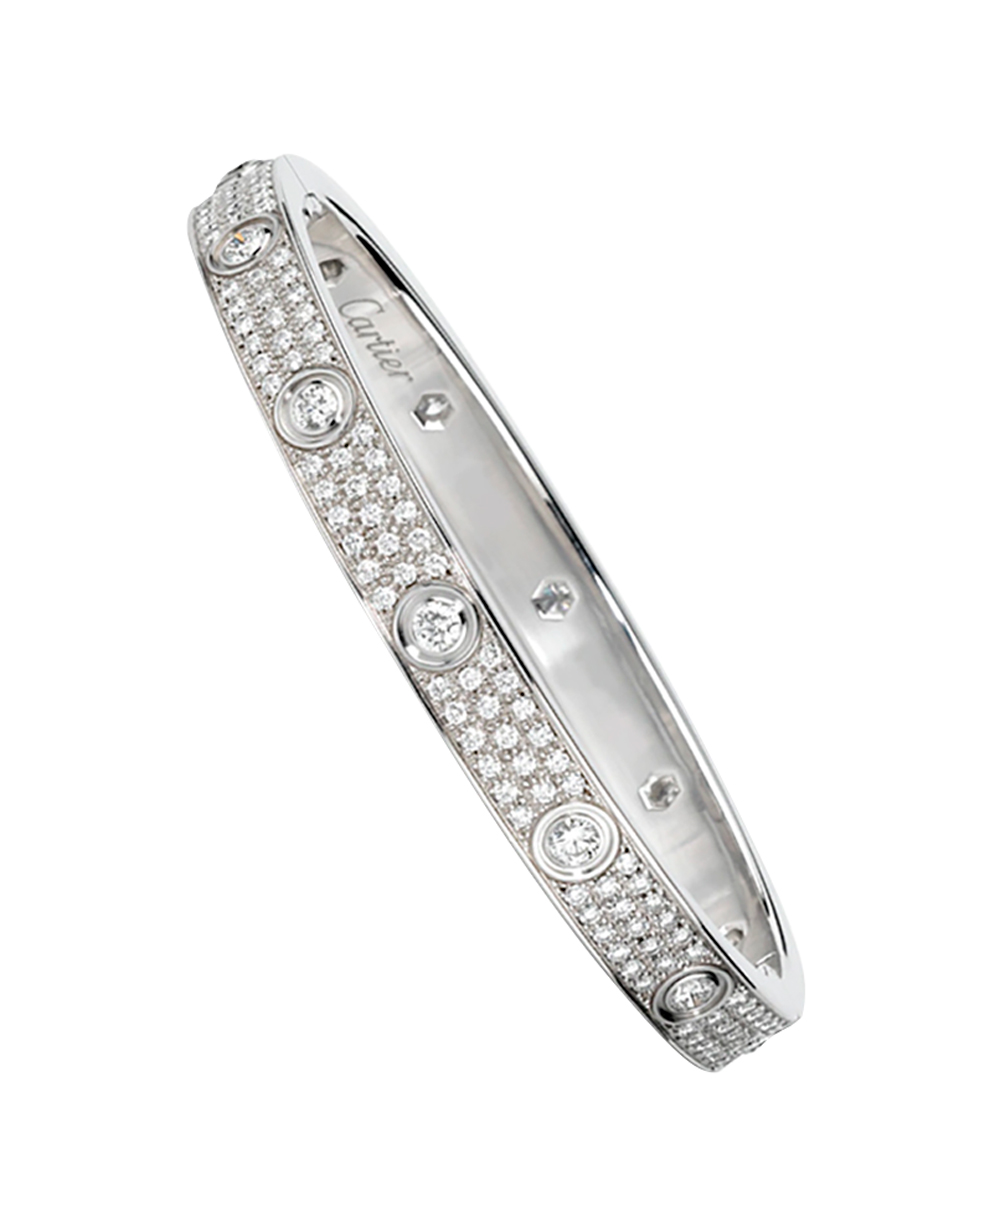 Браслет Cartier Love Diamond-Paved White Gold Bracelet N6033602 (31548) купить в Москве, выгодная цена - ломбард на Кутузовском